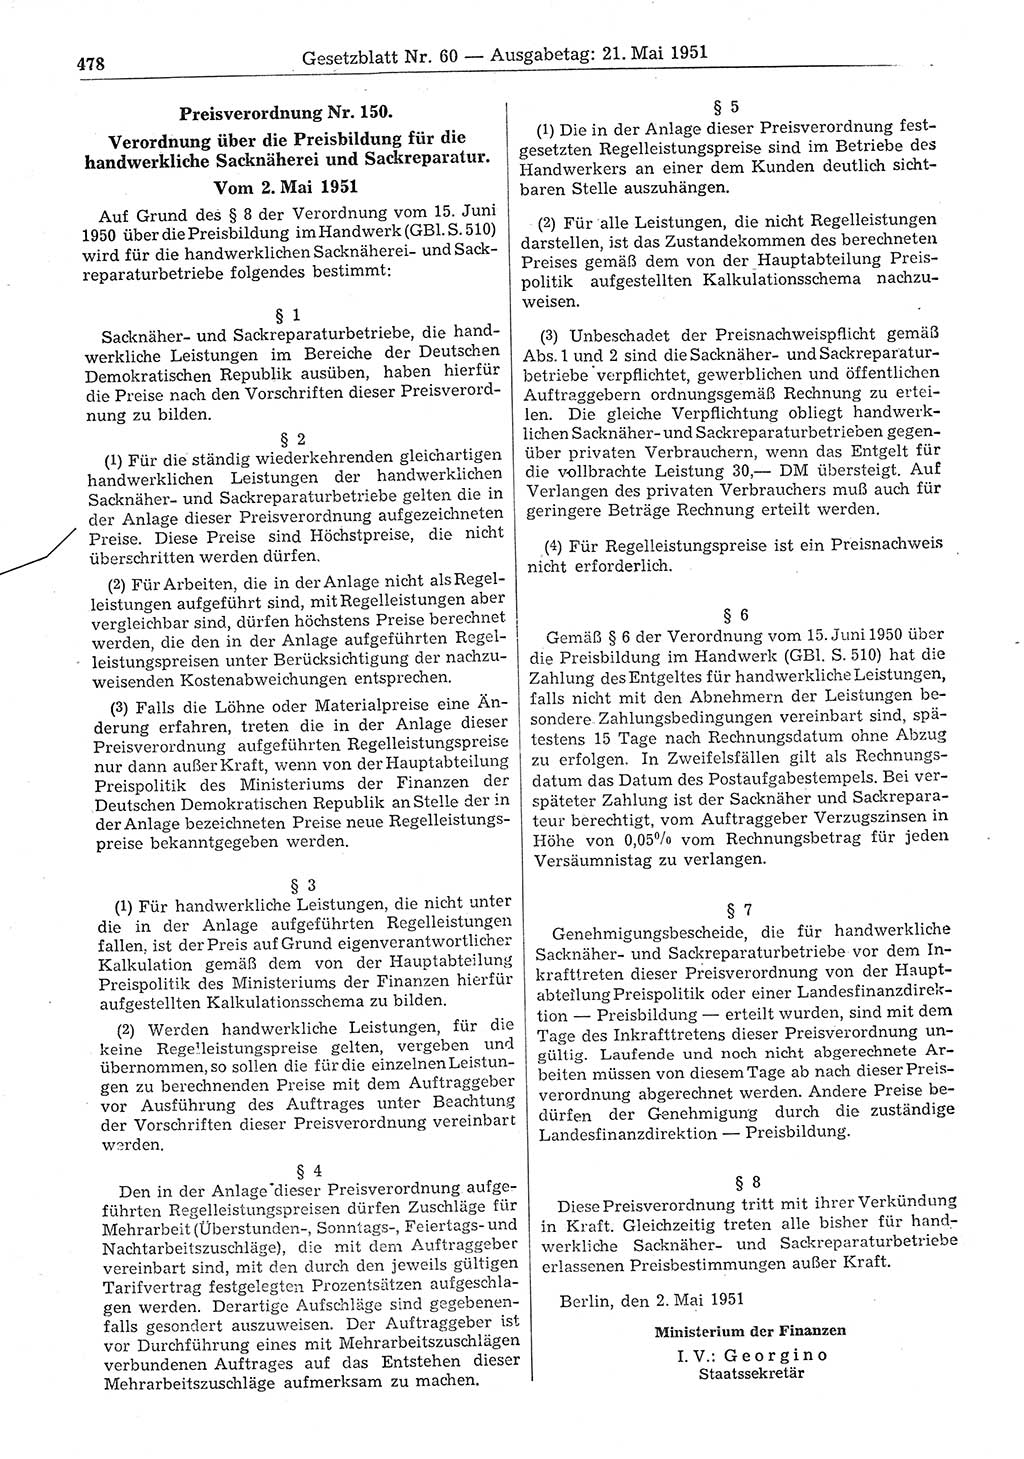 Gesetzblatt (GBl.) der Deutschen Demokratischen Republik (DDR) 1951, Seite 478 (GBl. DDR 1951, S. 478)